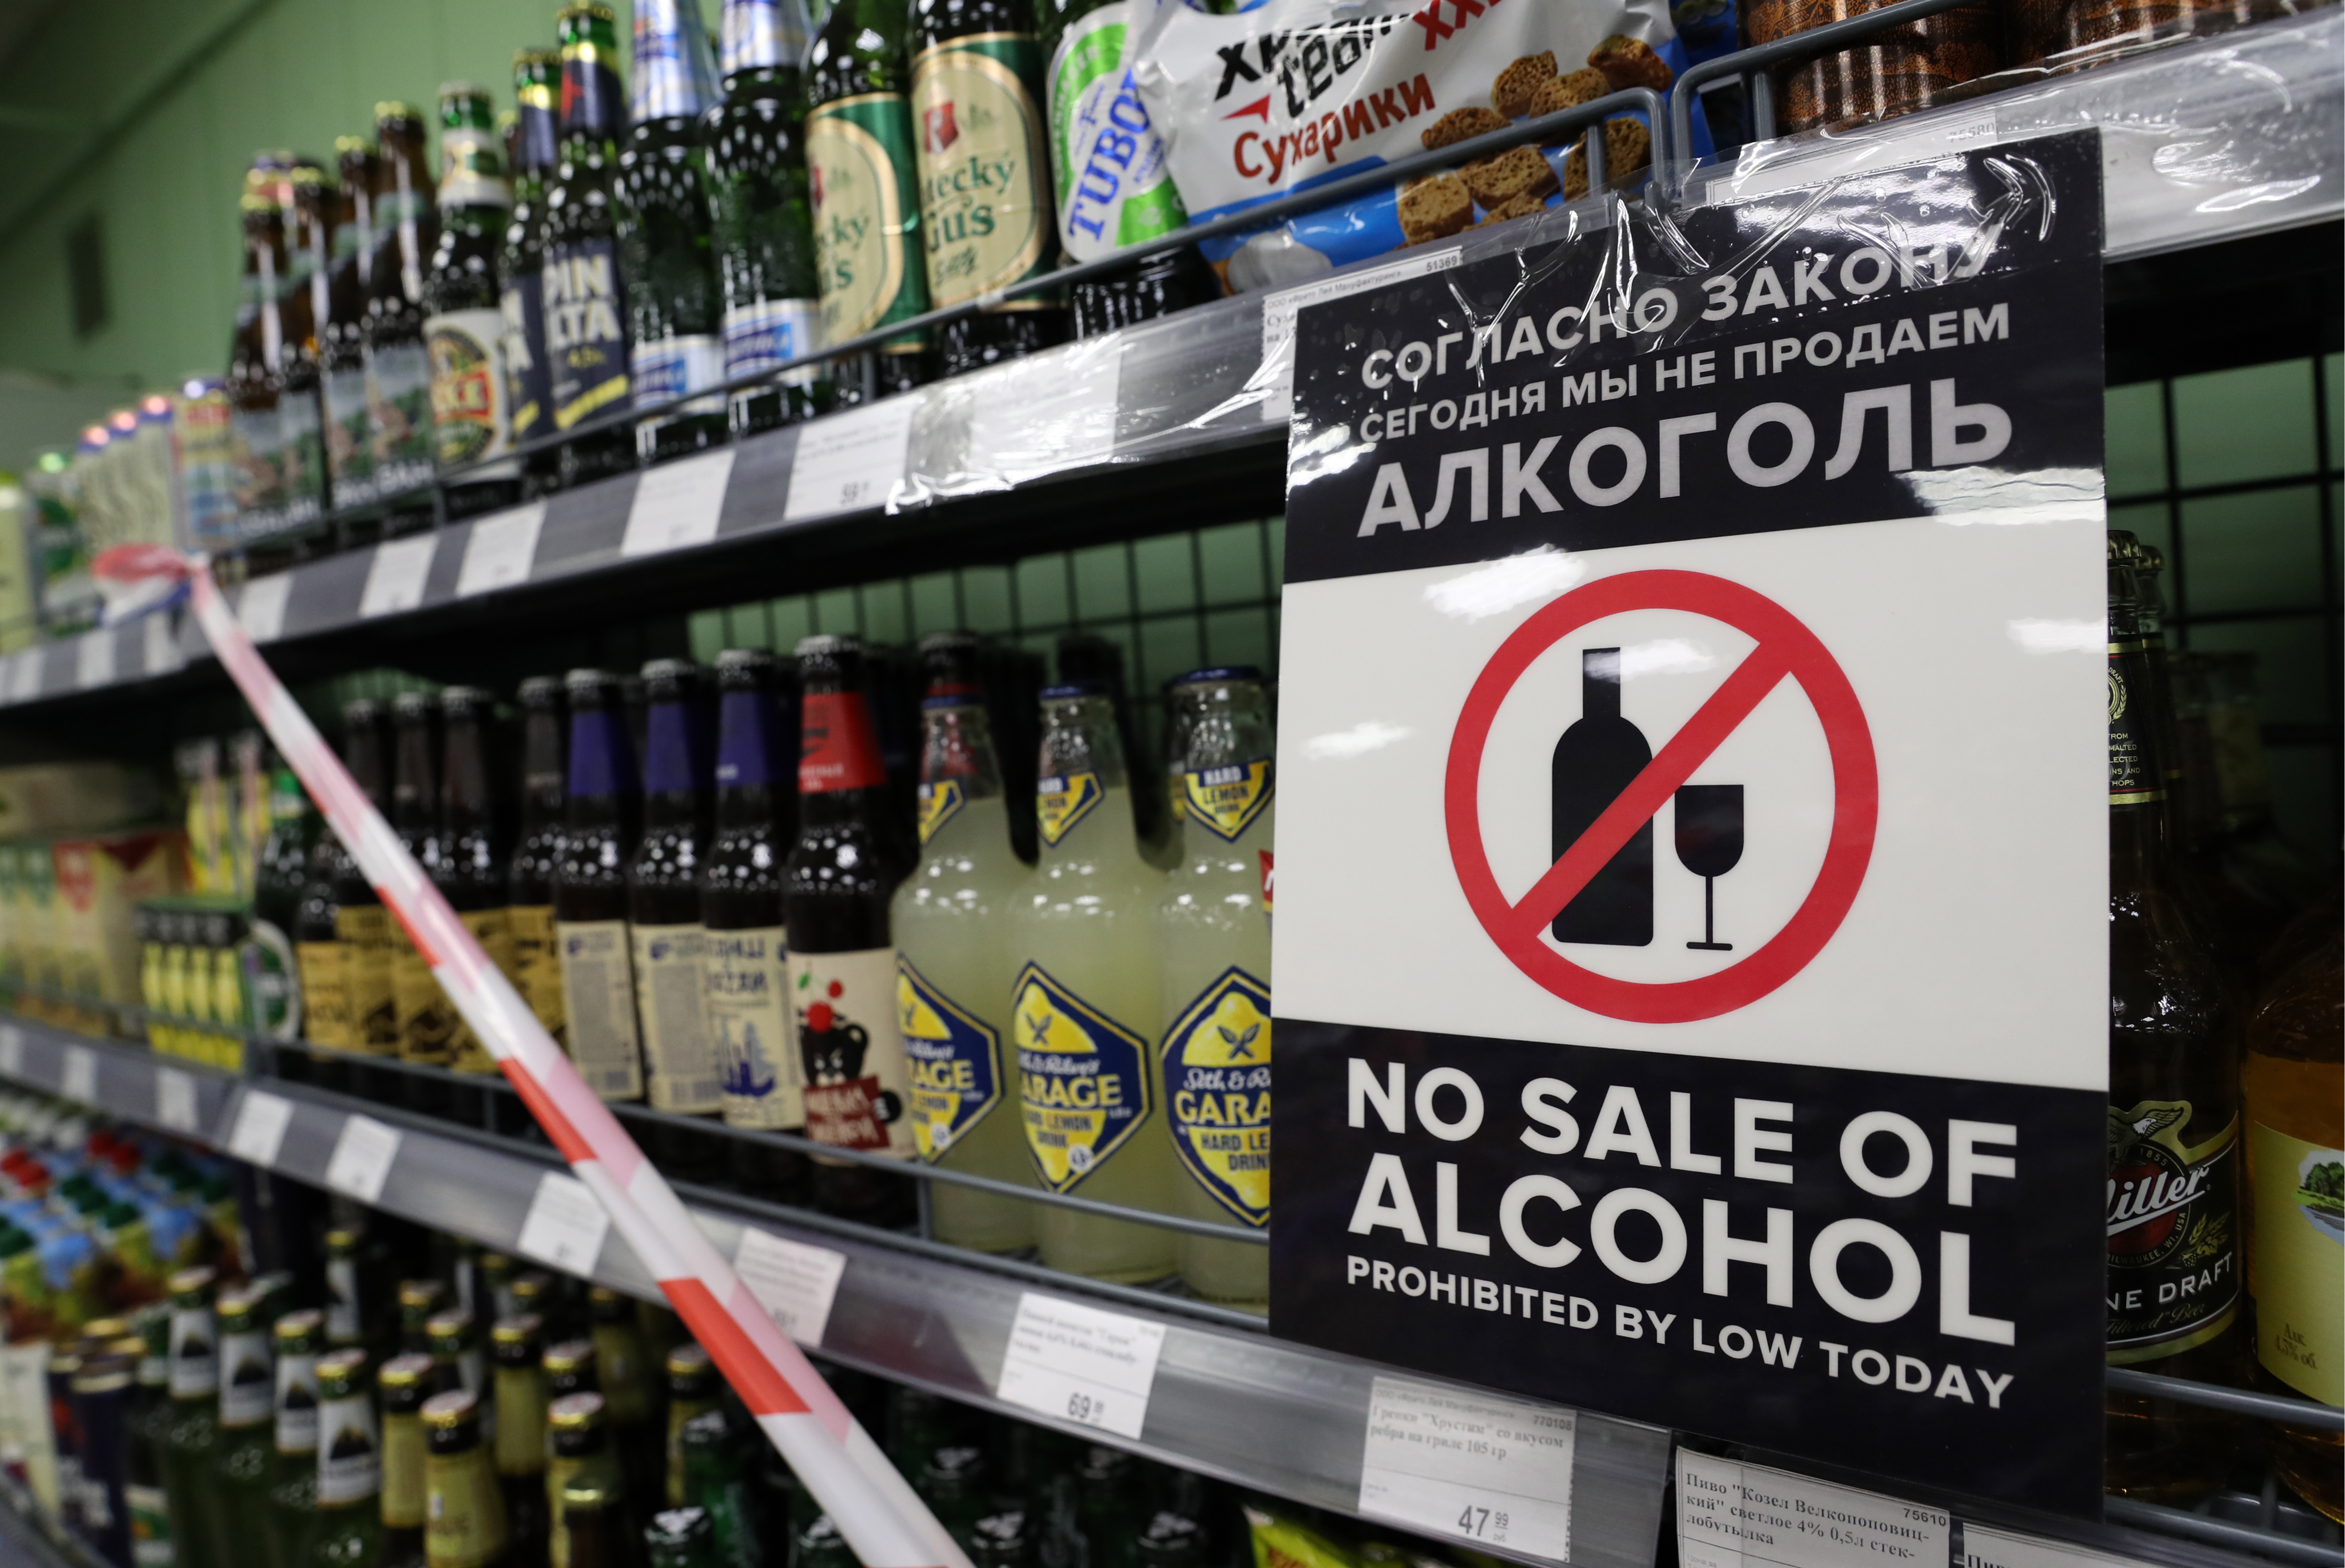 Володин поручил проверить исполнение закона о запрете продажи алкоголя возле детских учреждений 